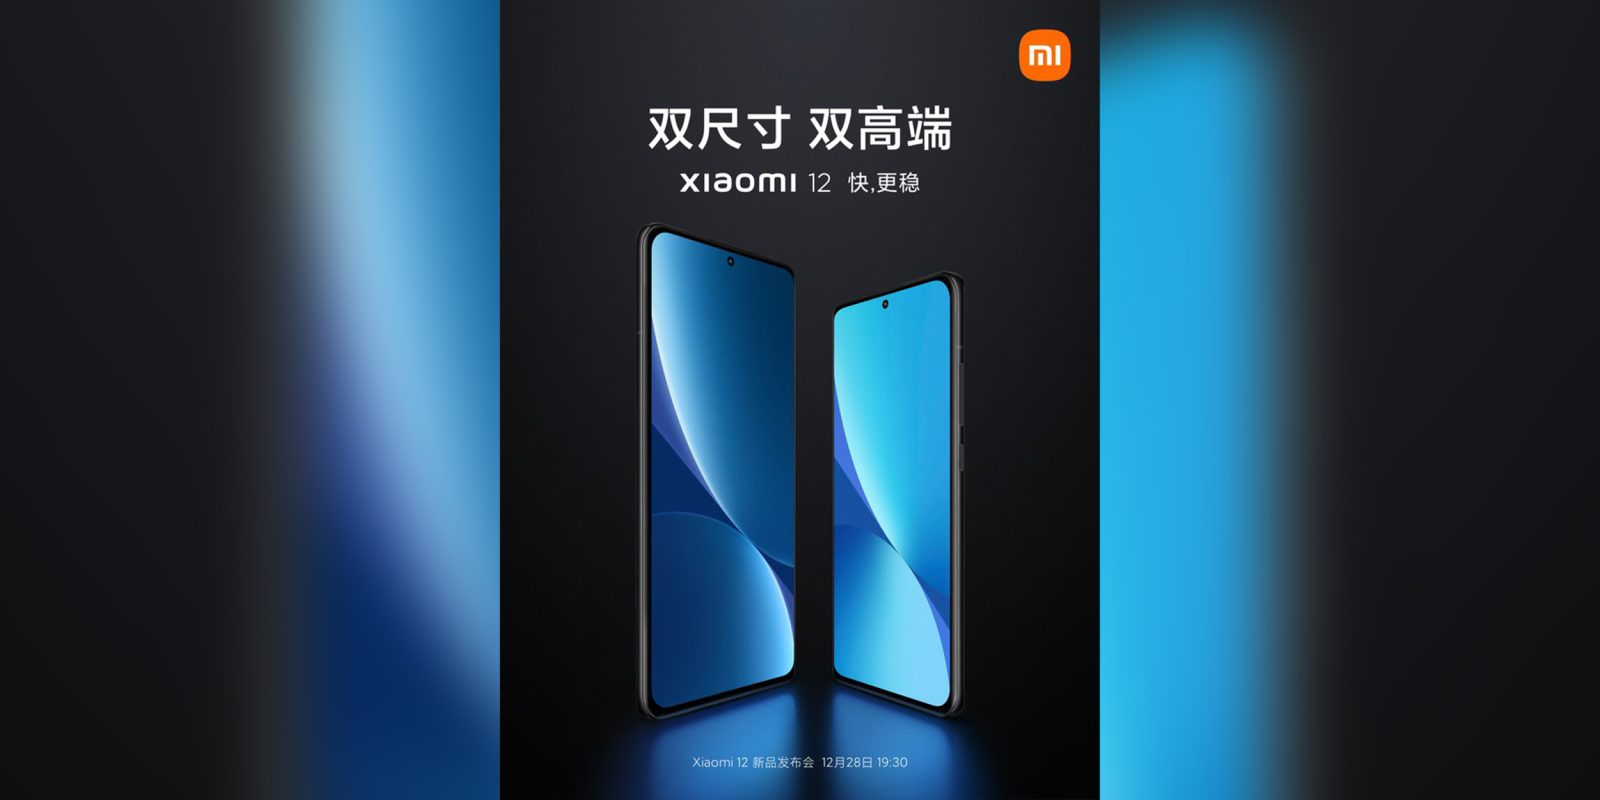 Update Xiaomi 12 Se Lanzara En China El 28 De